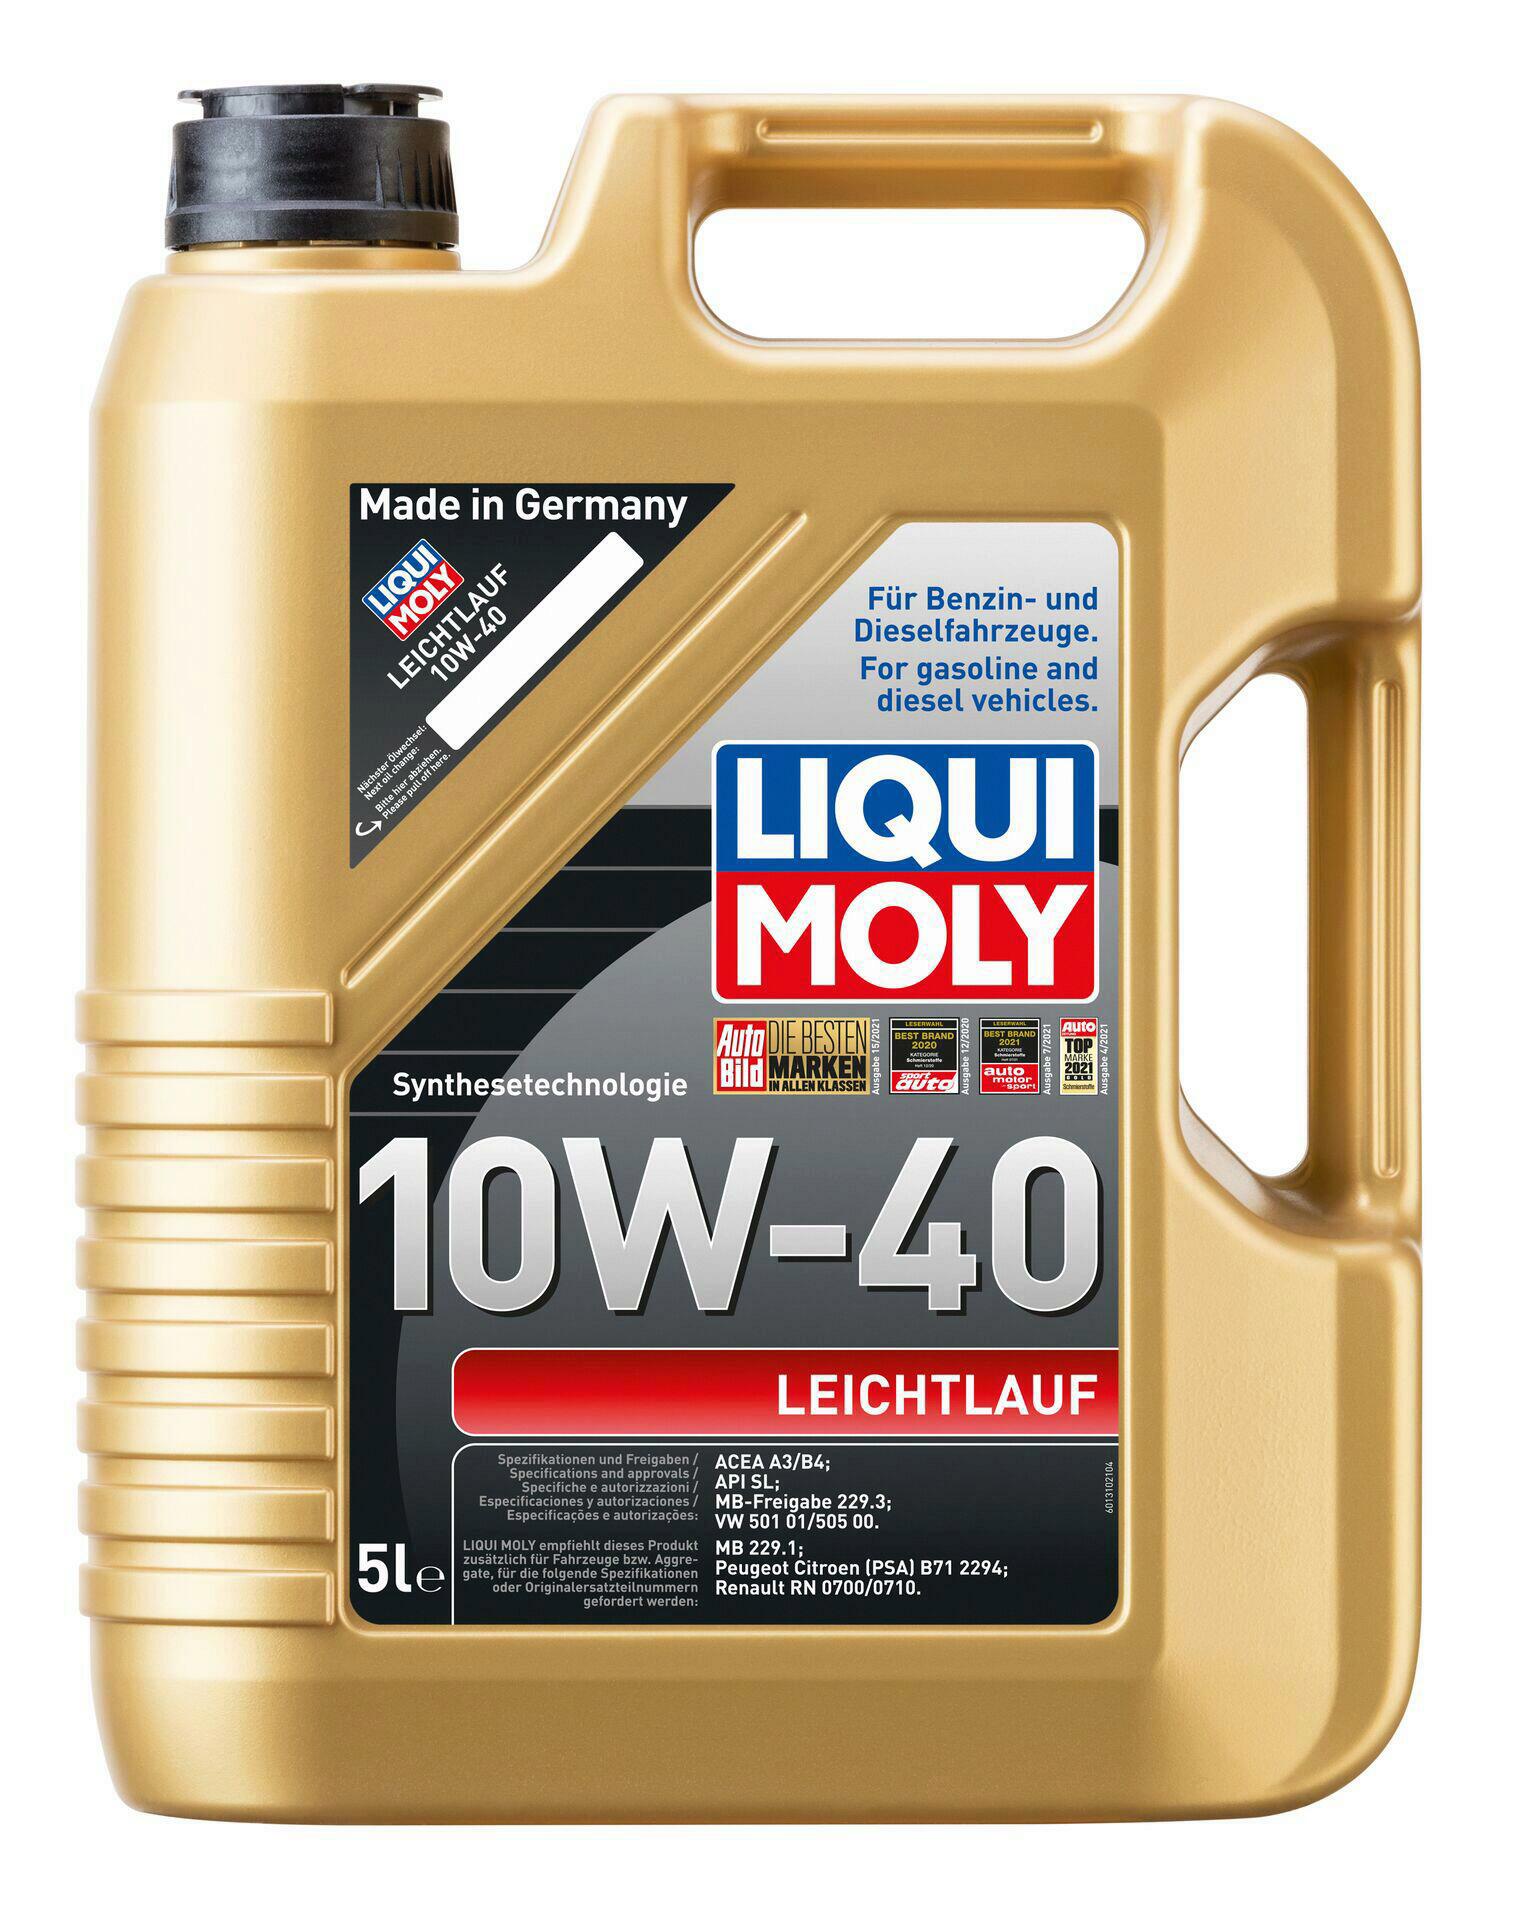 Liqui Moly Leichtlauföl 10W-40 HD 5L